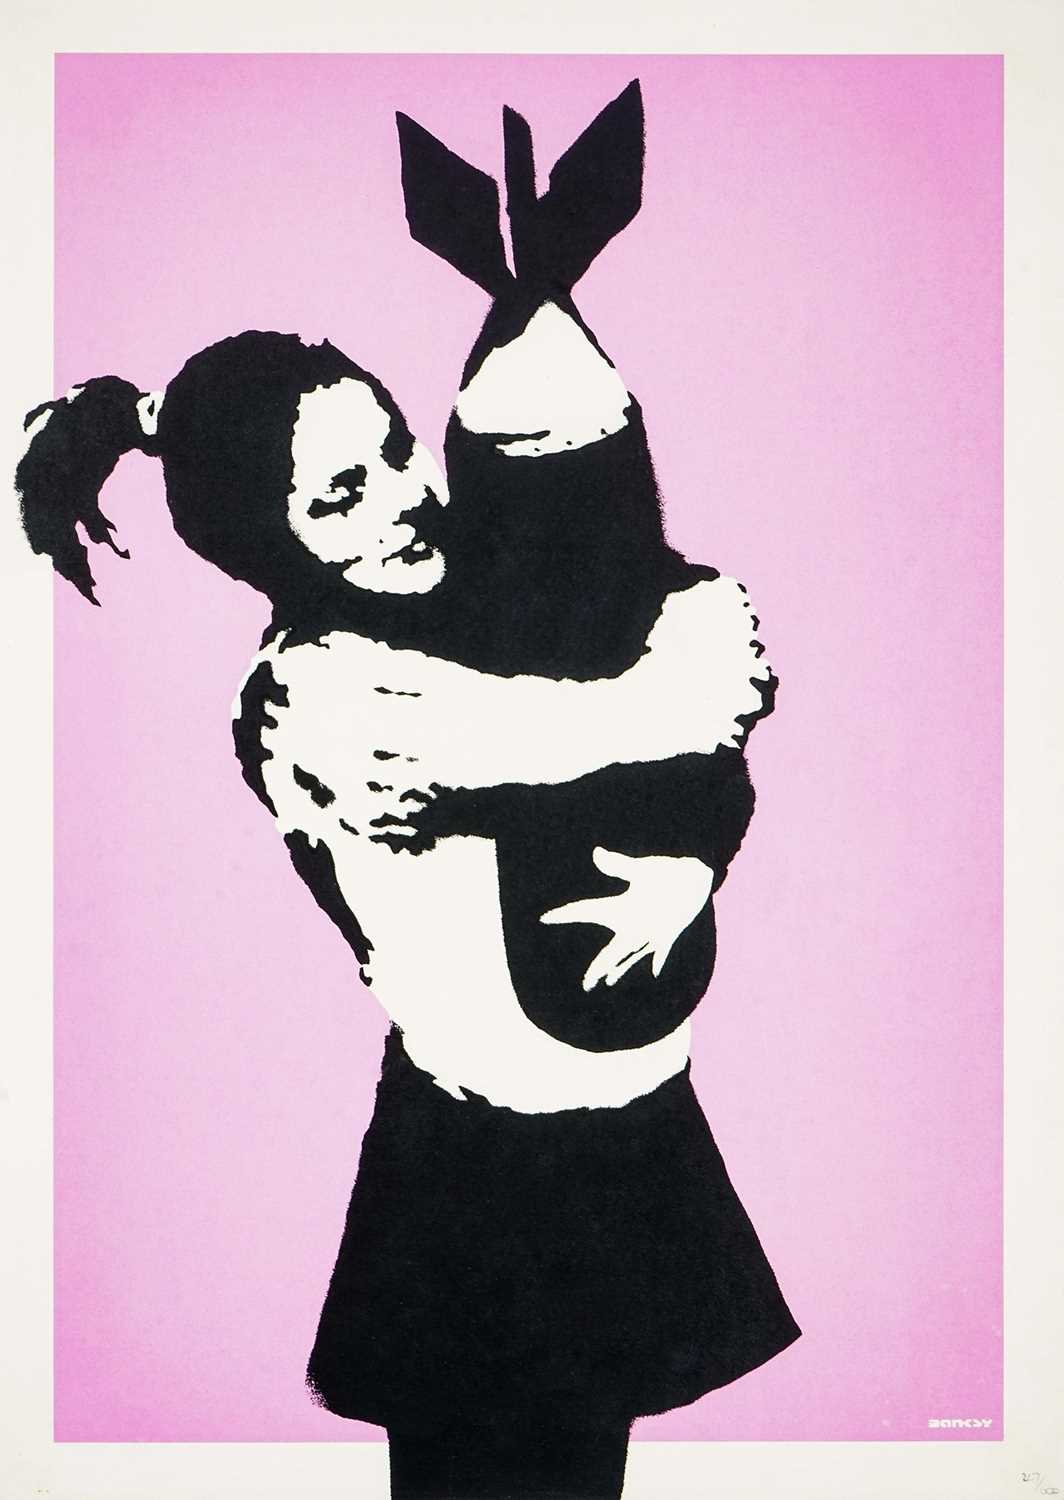 Lot 173 - Banksy (British 1974-), 'Bomb Hugger', 2003